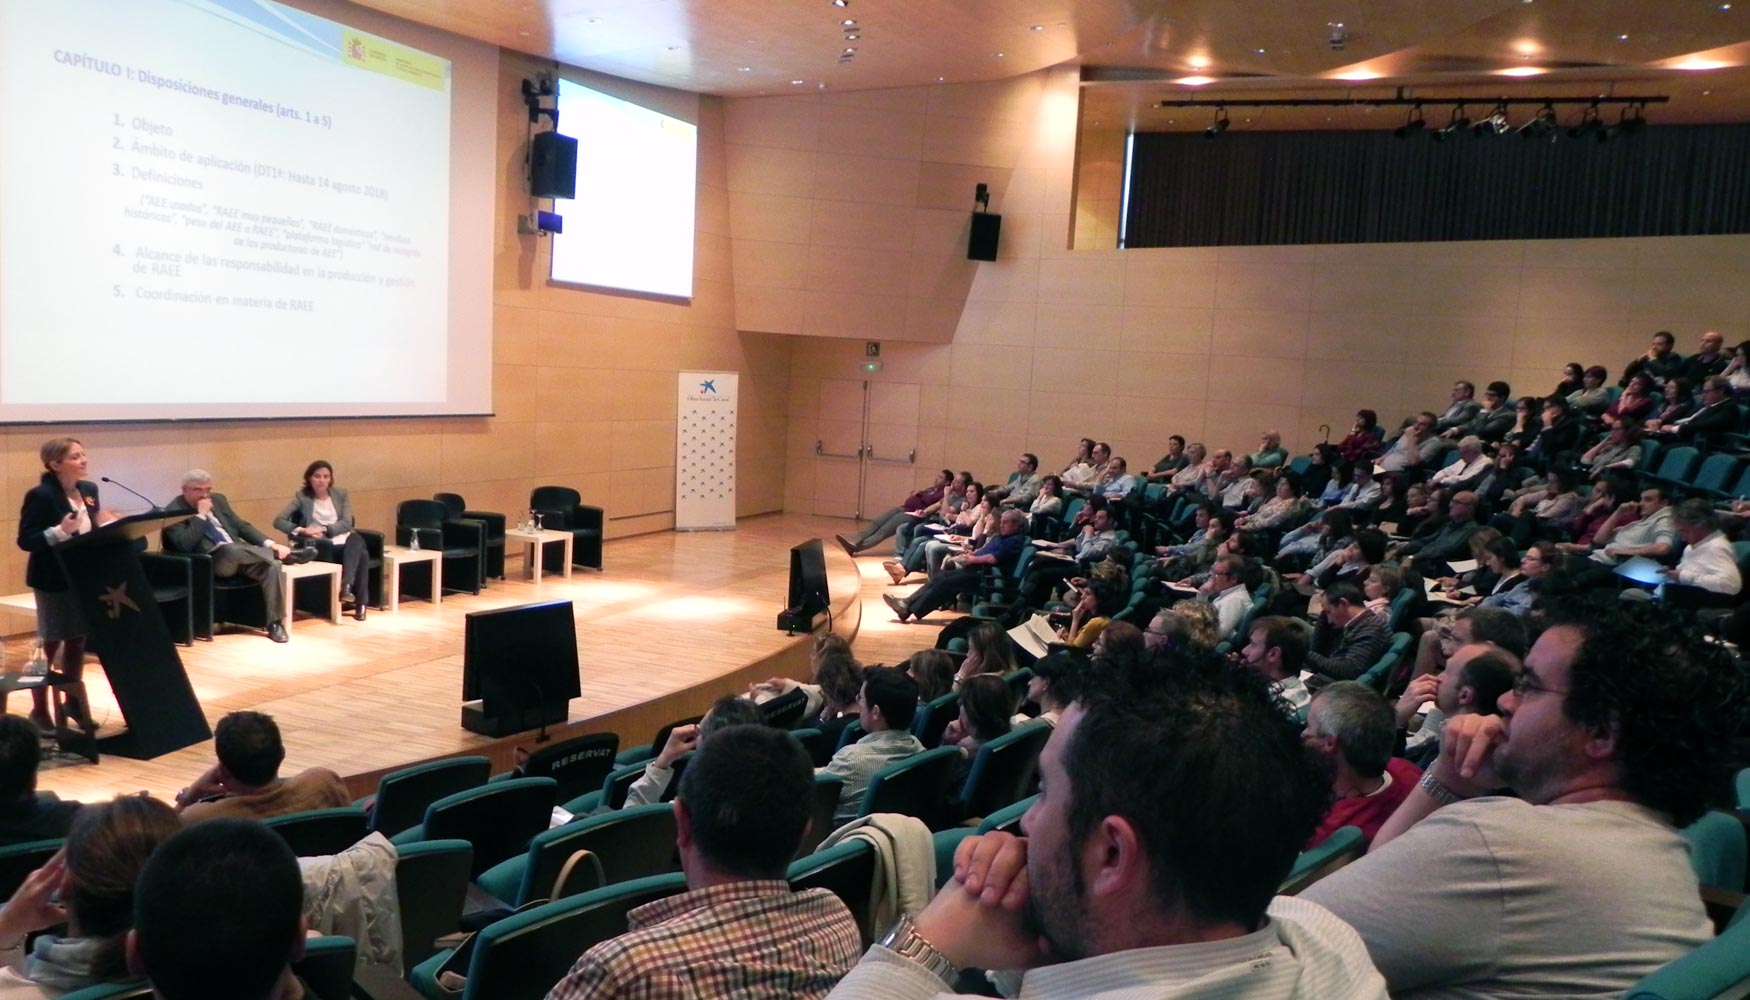 Las conferencias llenaron el auditorio del Caixaforum de Barcelona durante dos das